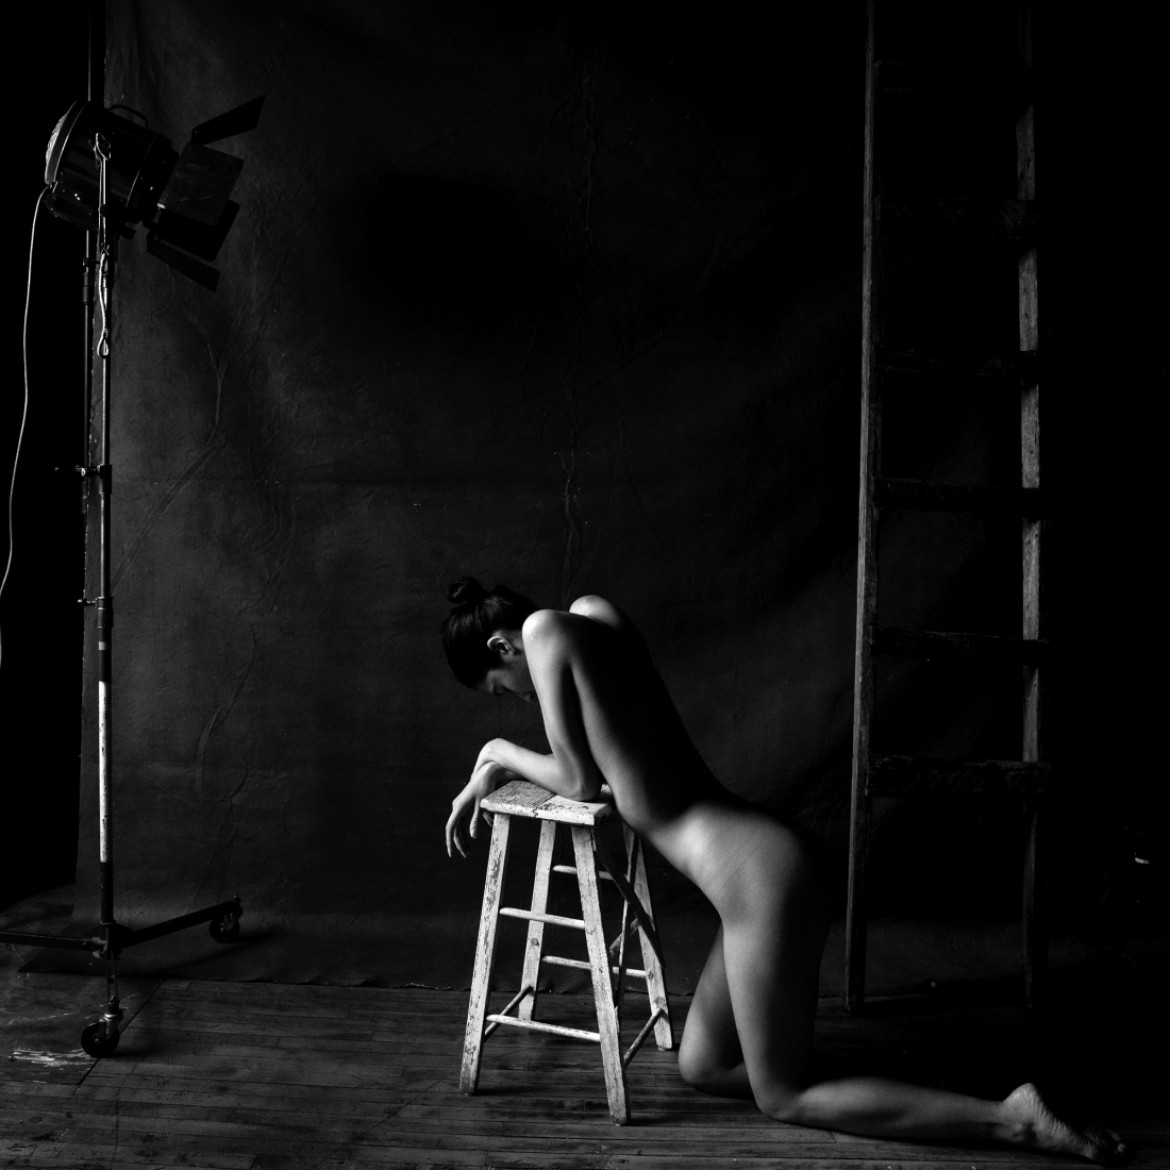 fot. Malcolm Lobban, z cyklu "Stage Set", 1. miejsce w amatorskiej kat. Fine Art: Nudes / ND Awards 2020